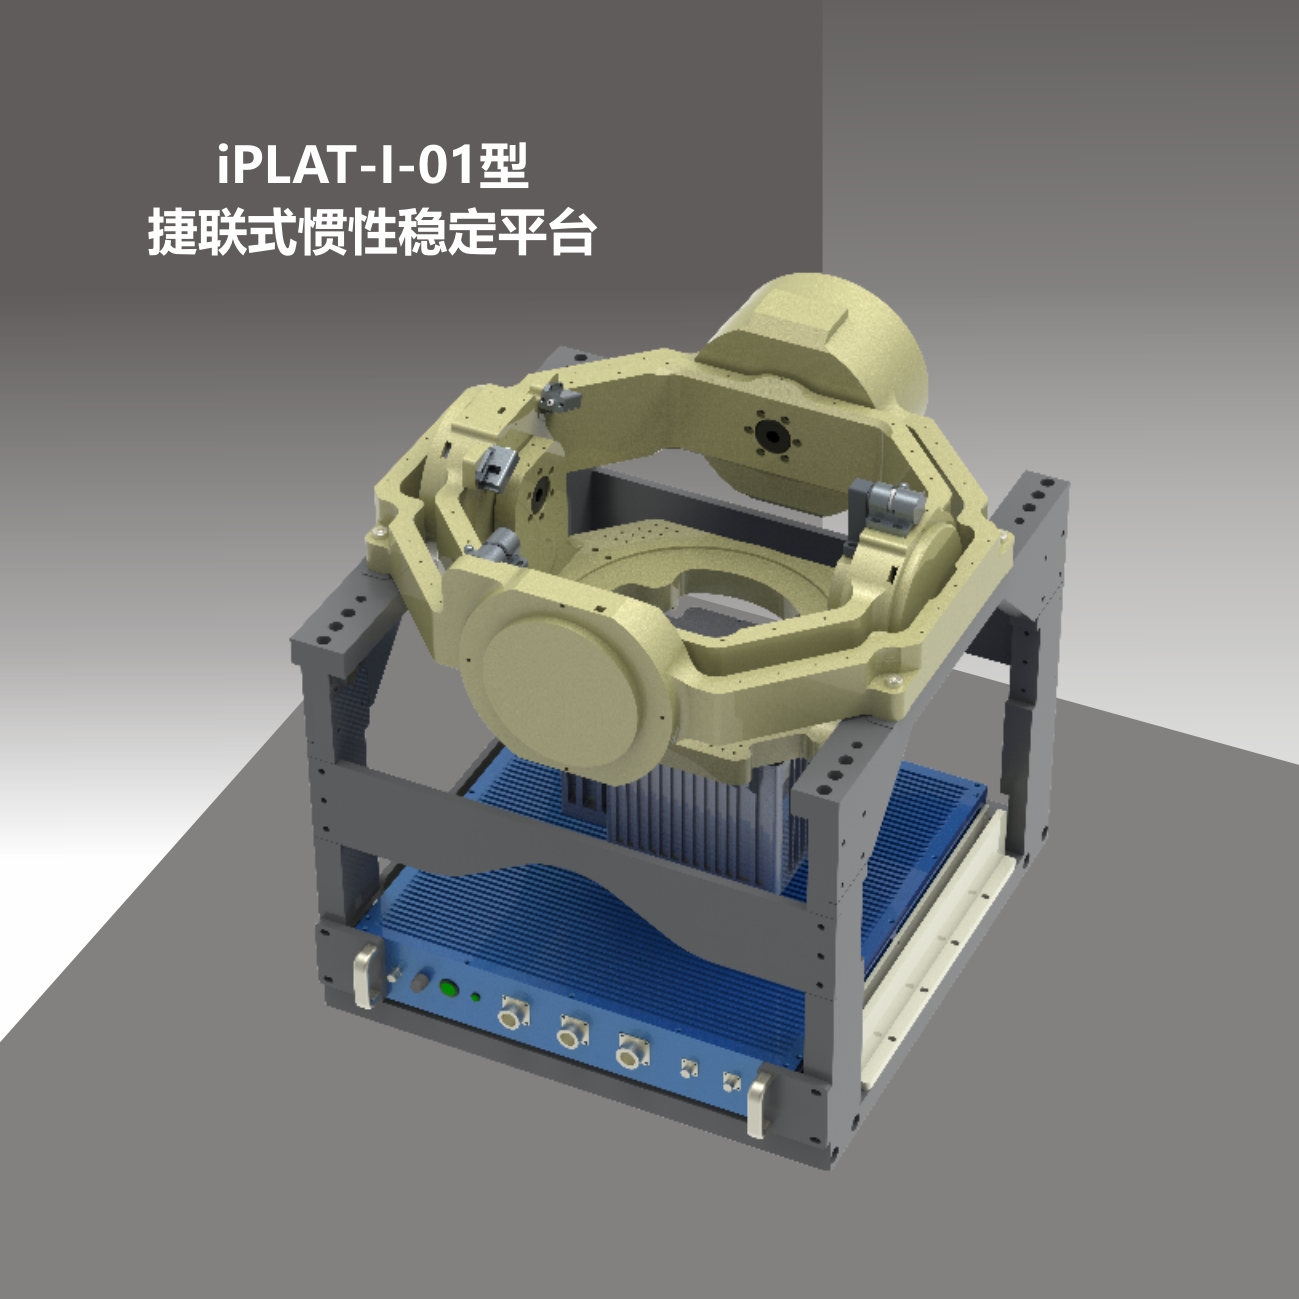 iPLAT-I-01型捷聯式慣性穩定平臺